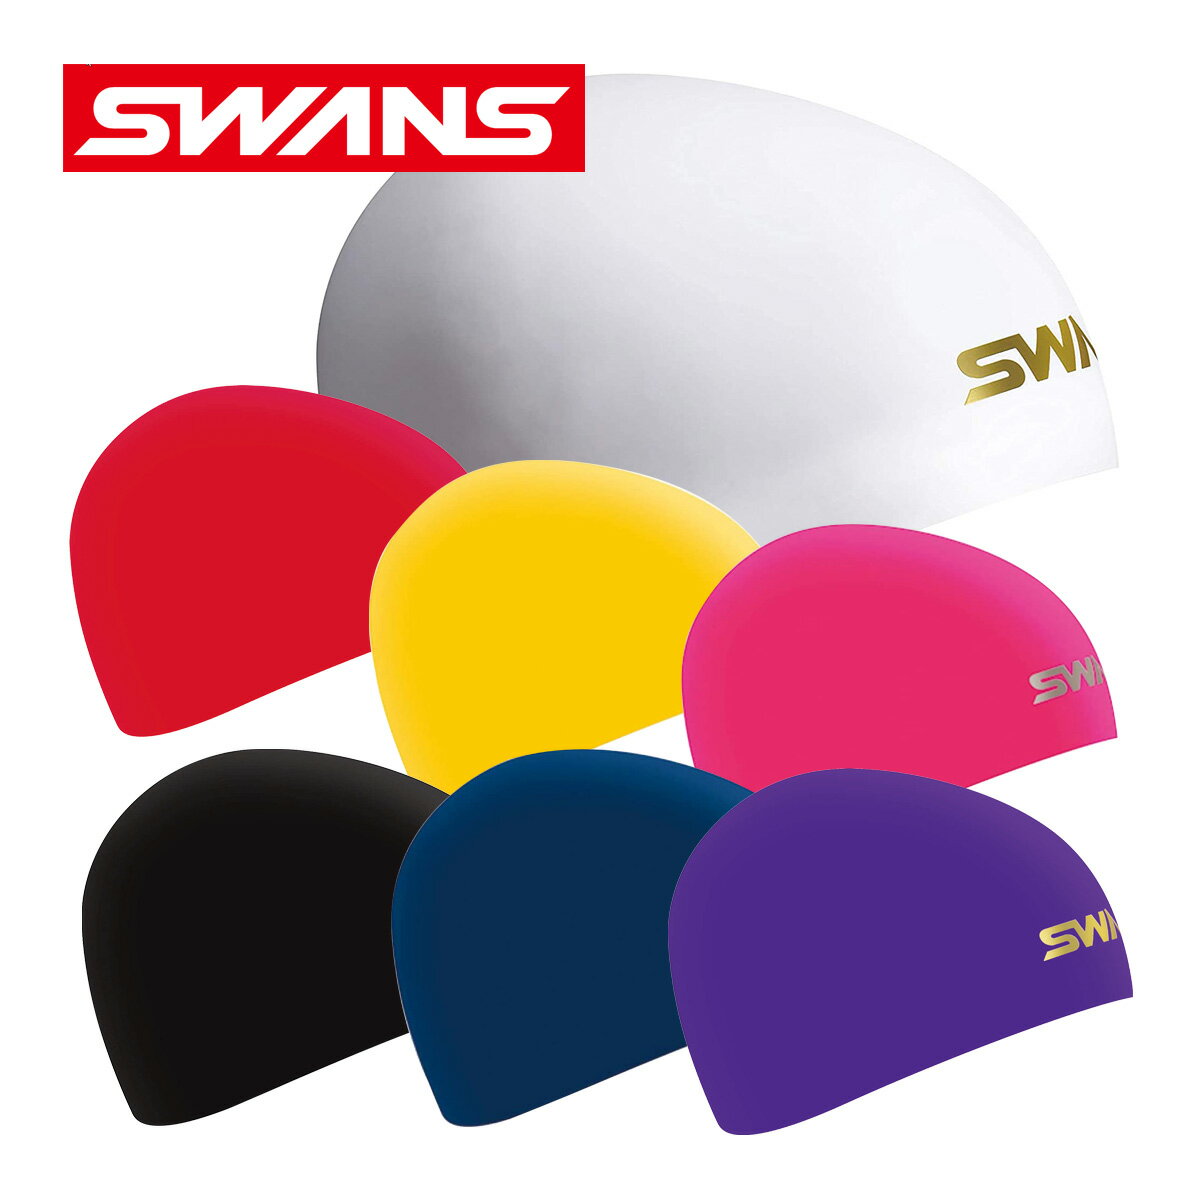 スイミングキャップ シリコン スイムキャップ 日本製 競泳 水泳 水泳帽 大人 ドーム型シリコーンキャップ Fina承認モデル 水泳帽子 スワンズ SWANS